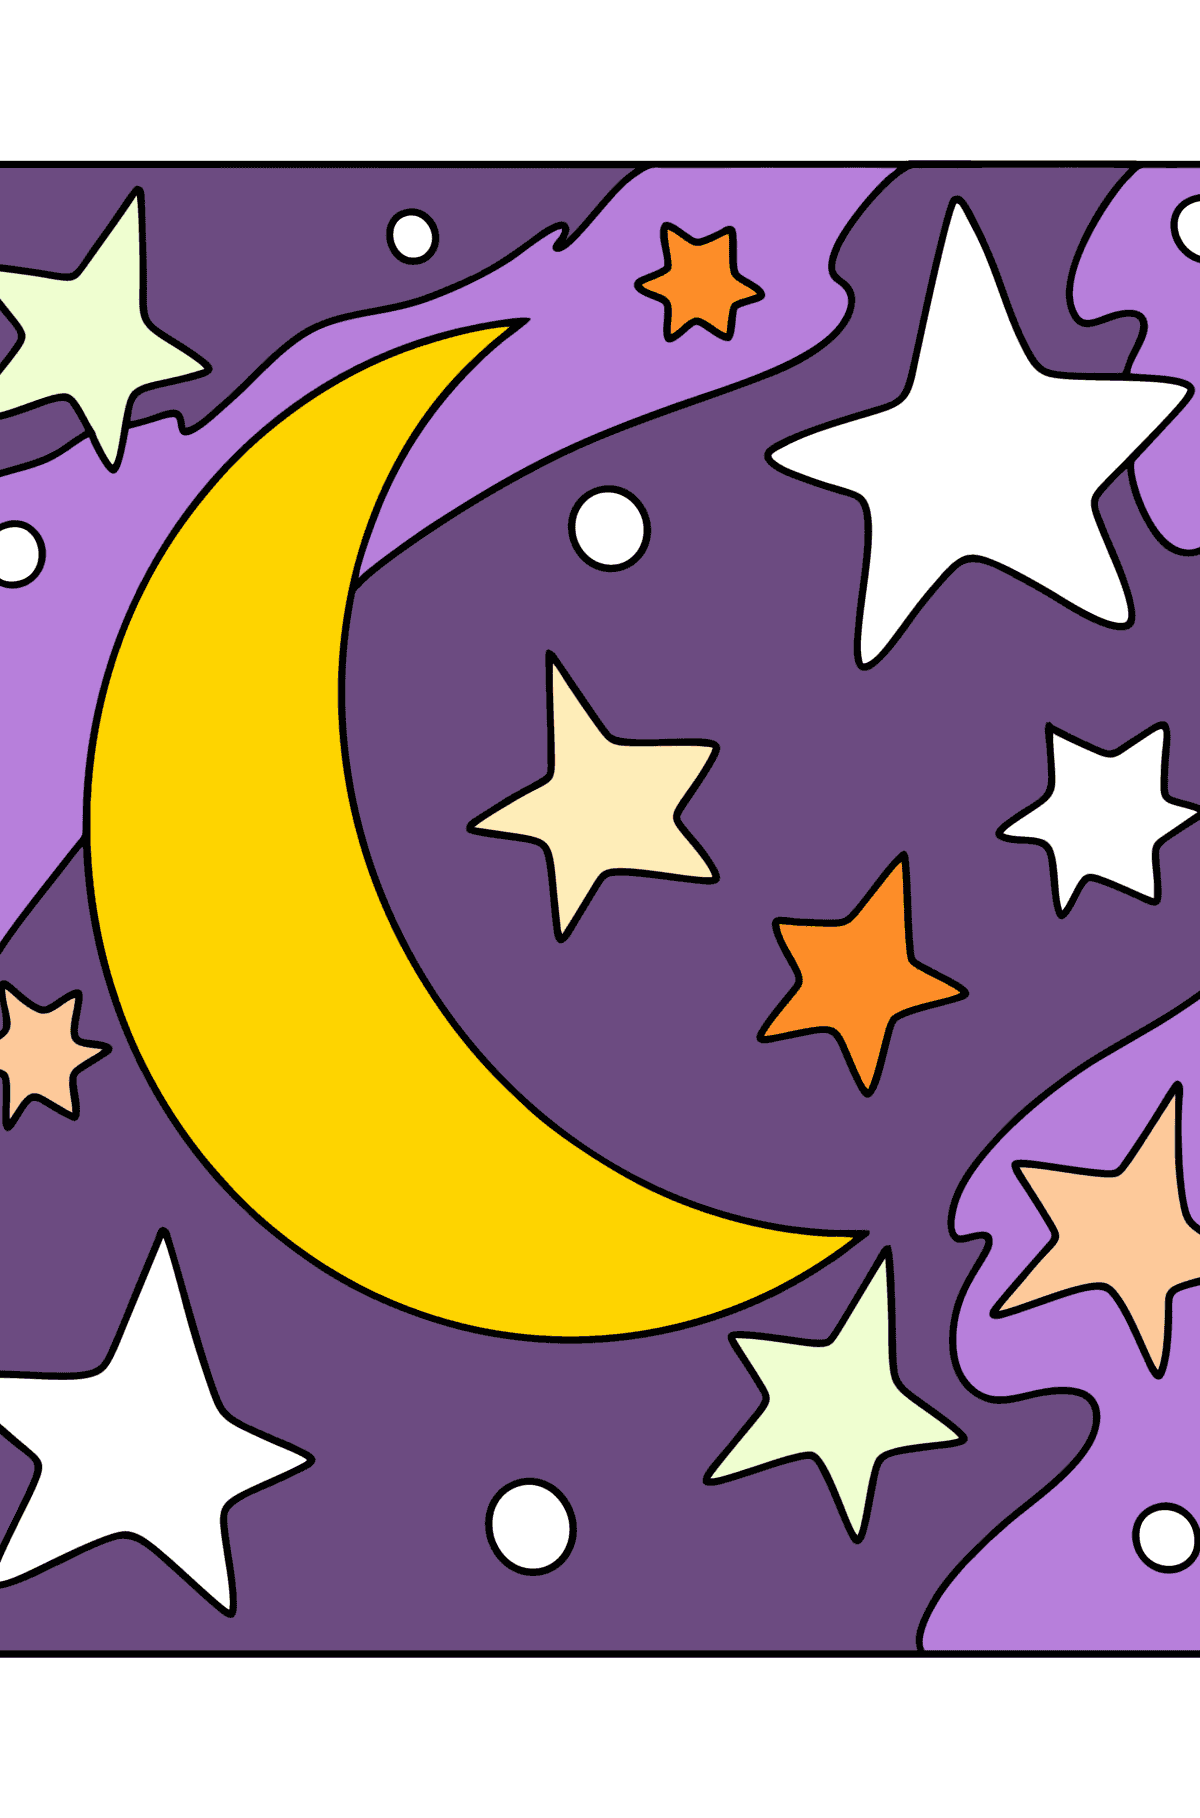 Coloriage lune et étoiles - Coloriages pour les Enfants